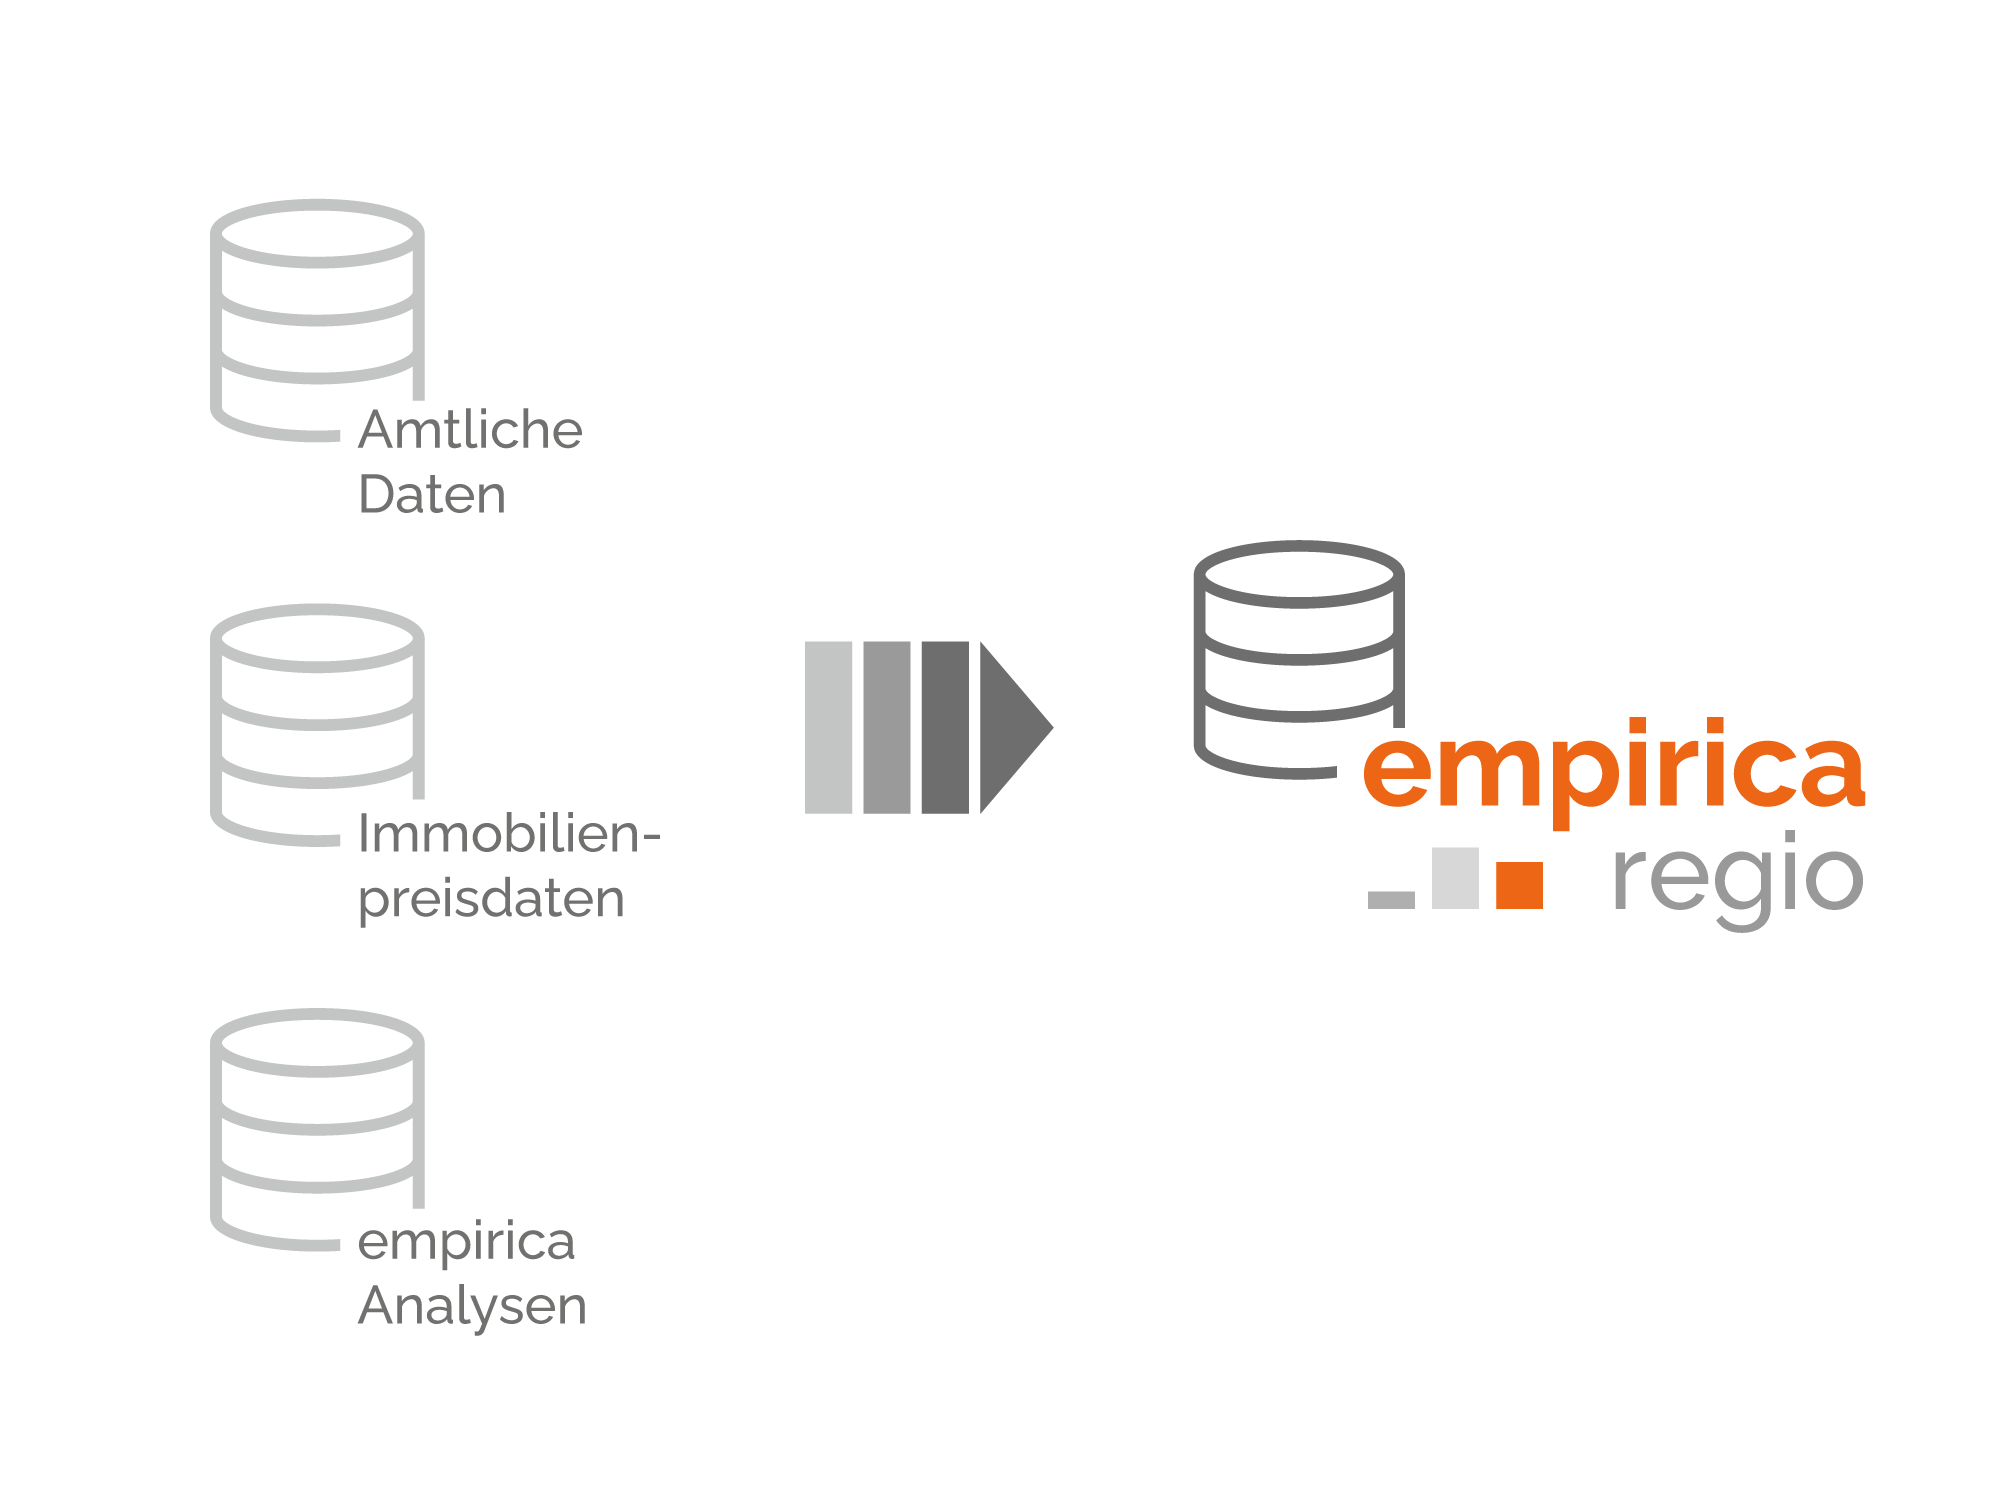 empirica Regionaldatenbank und Datenquellen aus amtlicher Statistik, Angebotsdaten sowie eigenen Analysen und Datenmodellen